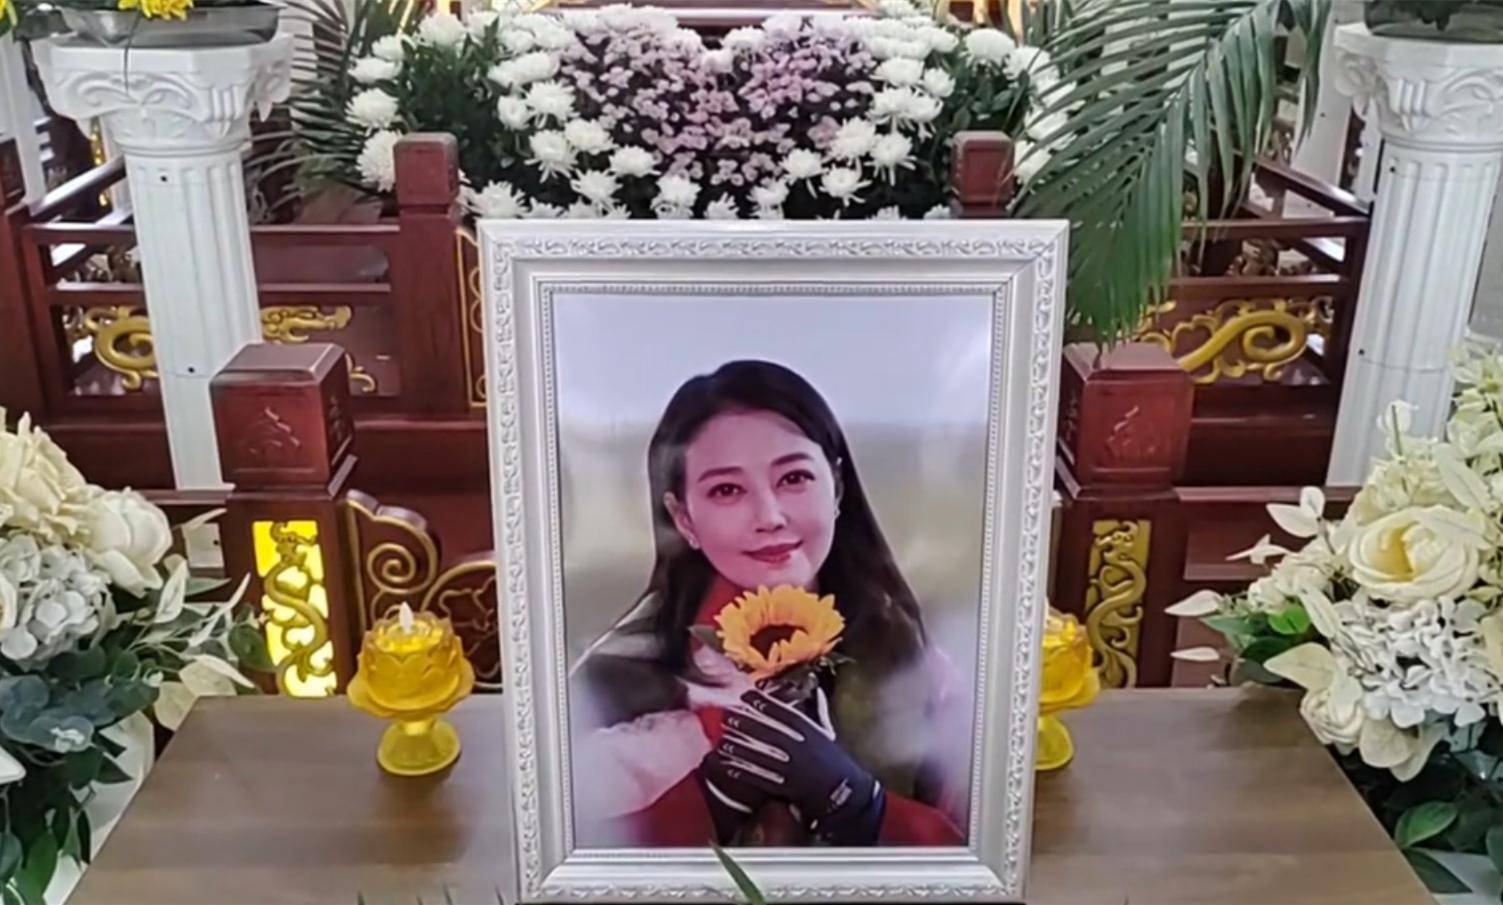 Châu Hải My bị lợi dụng sau khi qua đời, tạo dựng đám tang giả để câu view khiến netizen phẫn nộ - ảnh 2